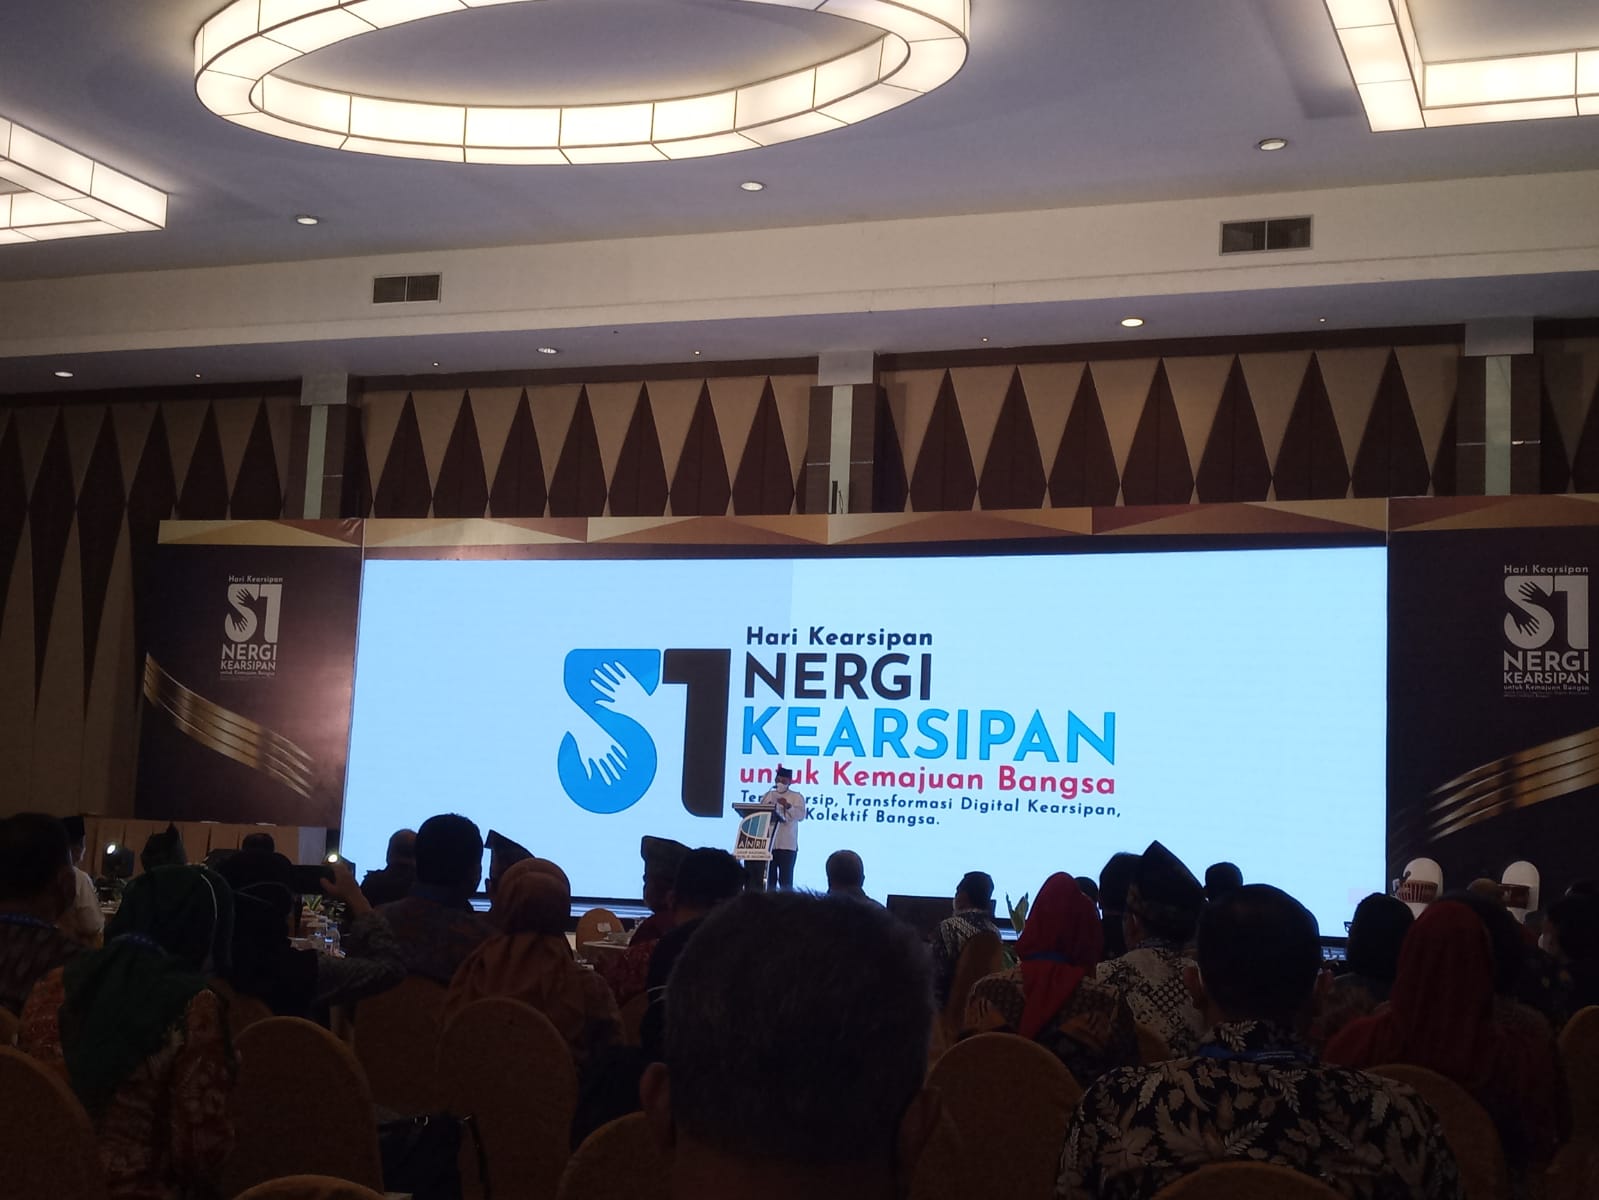 Siang ini, Sumatera Barat Terima Penghargaan Anugerah Kearsipan 2022